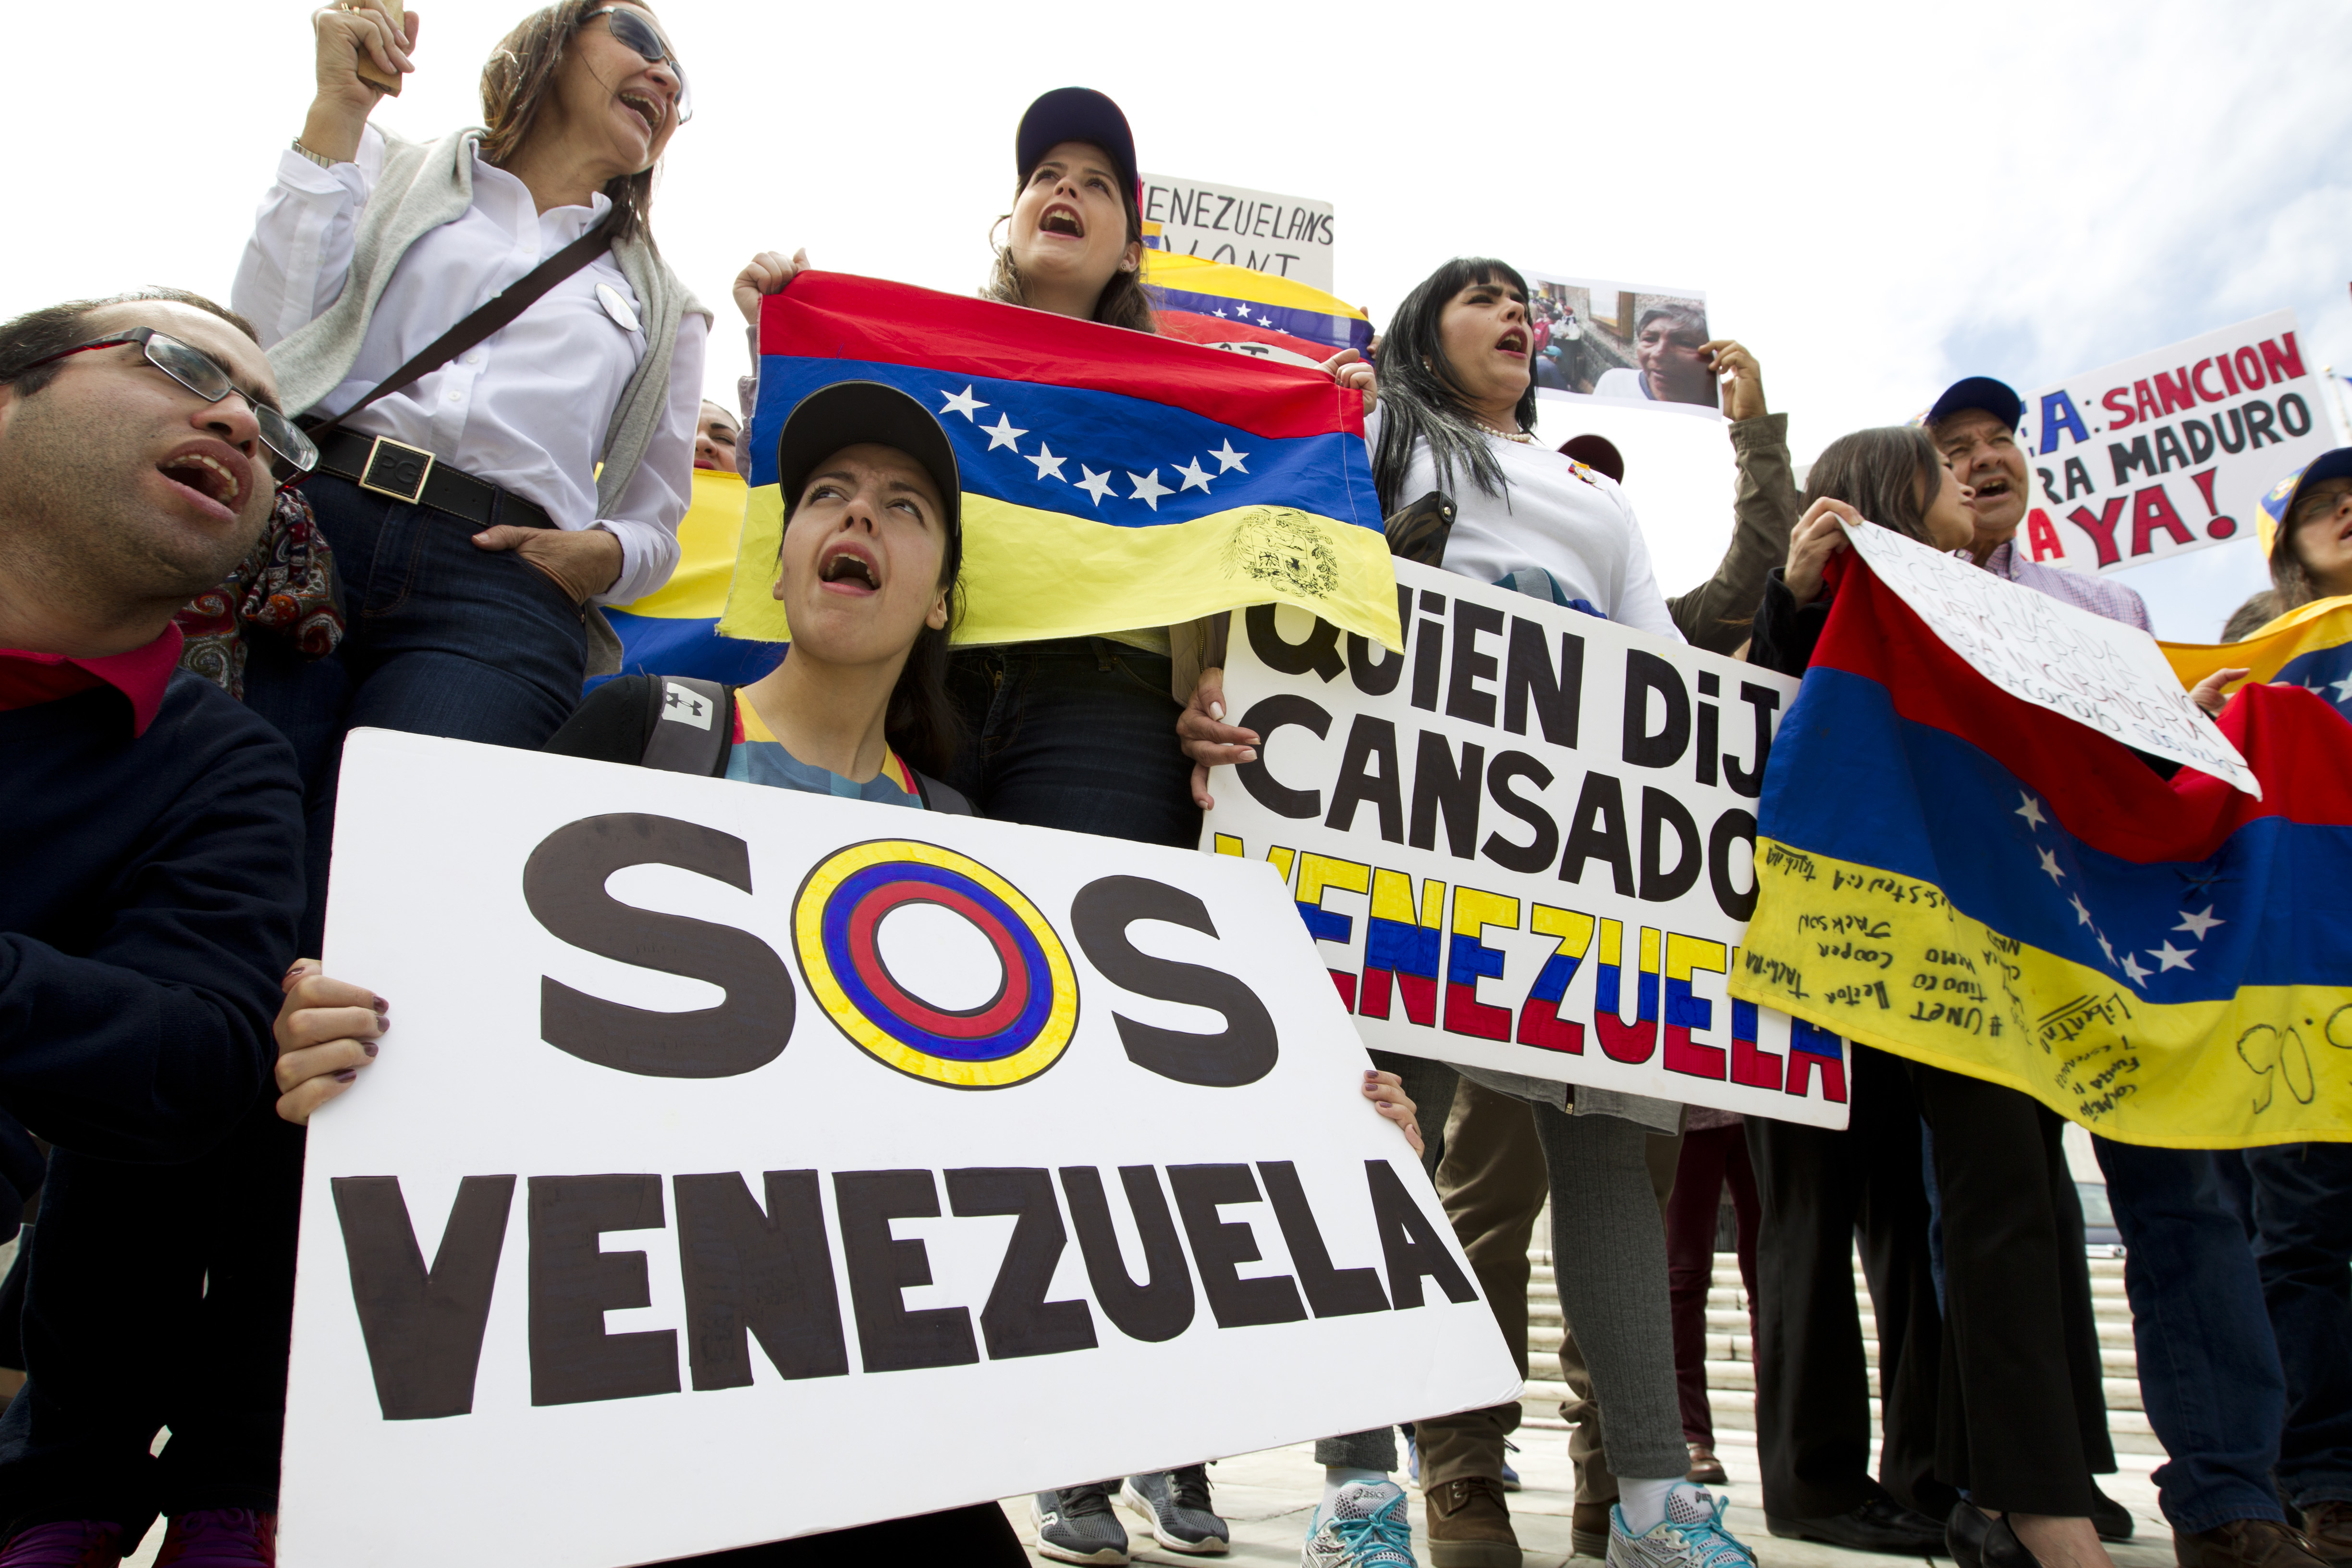 Oposición venezolana abandona negociación gobierno Maduro